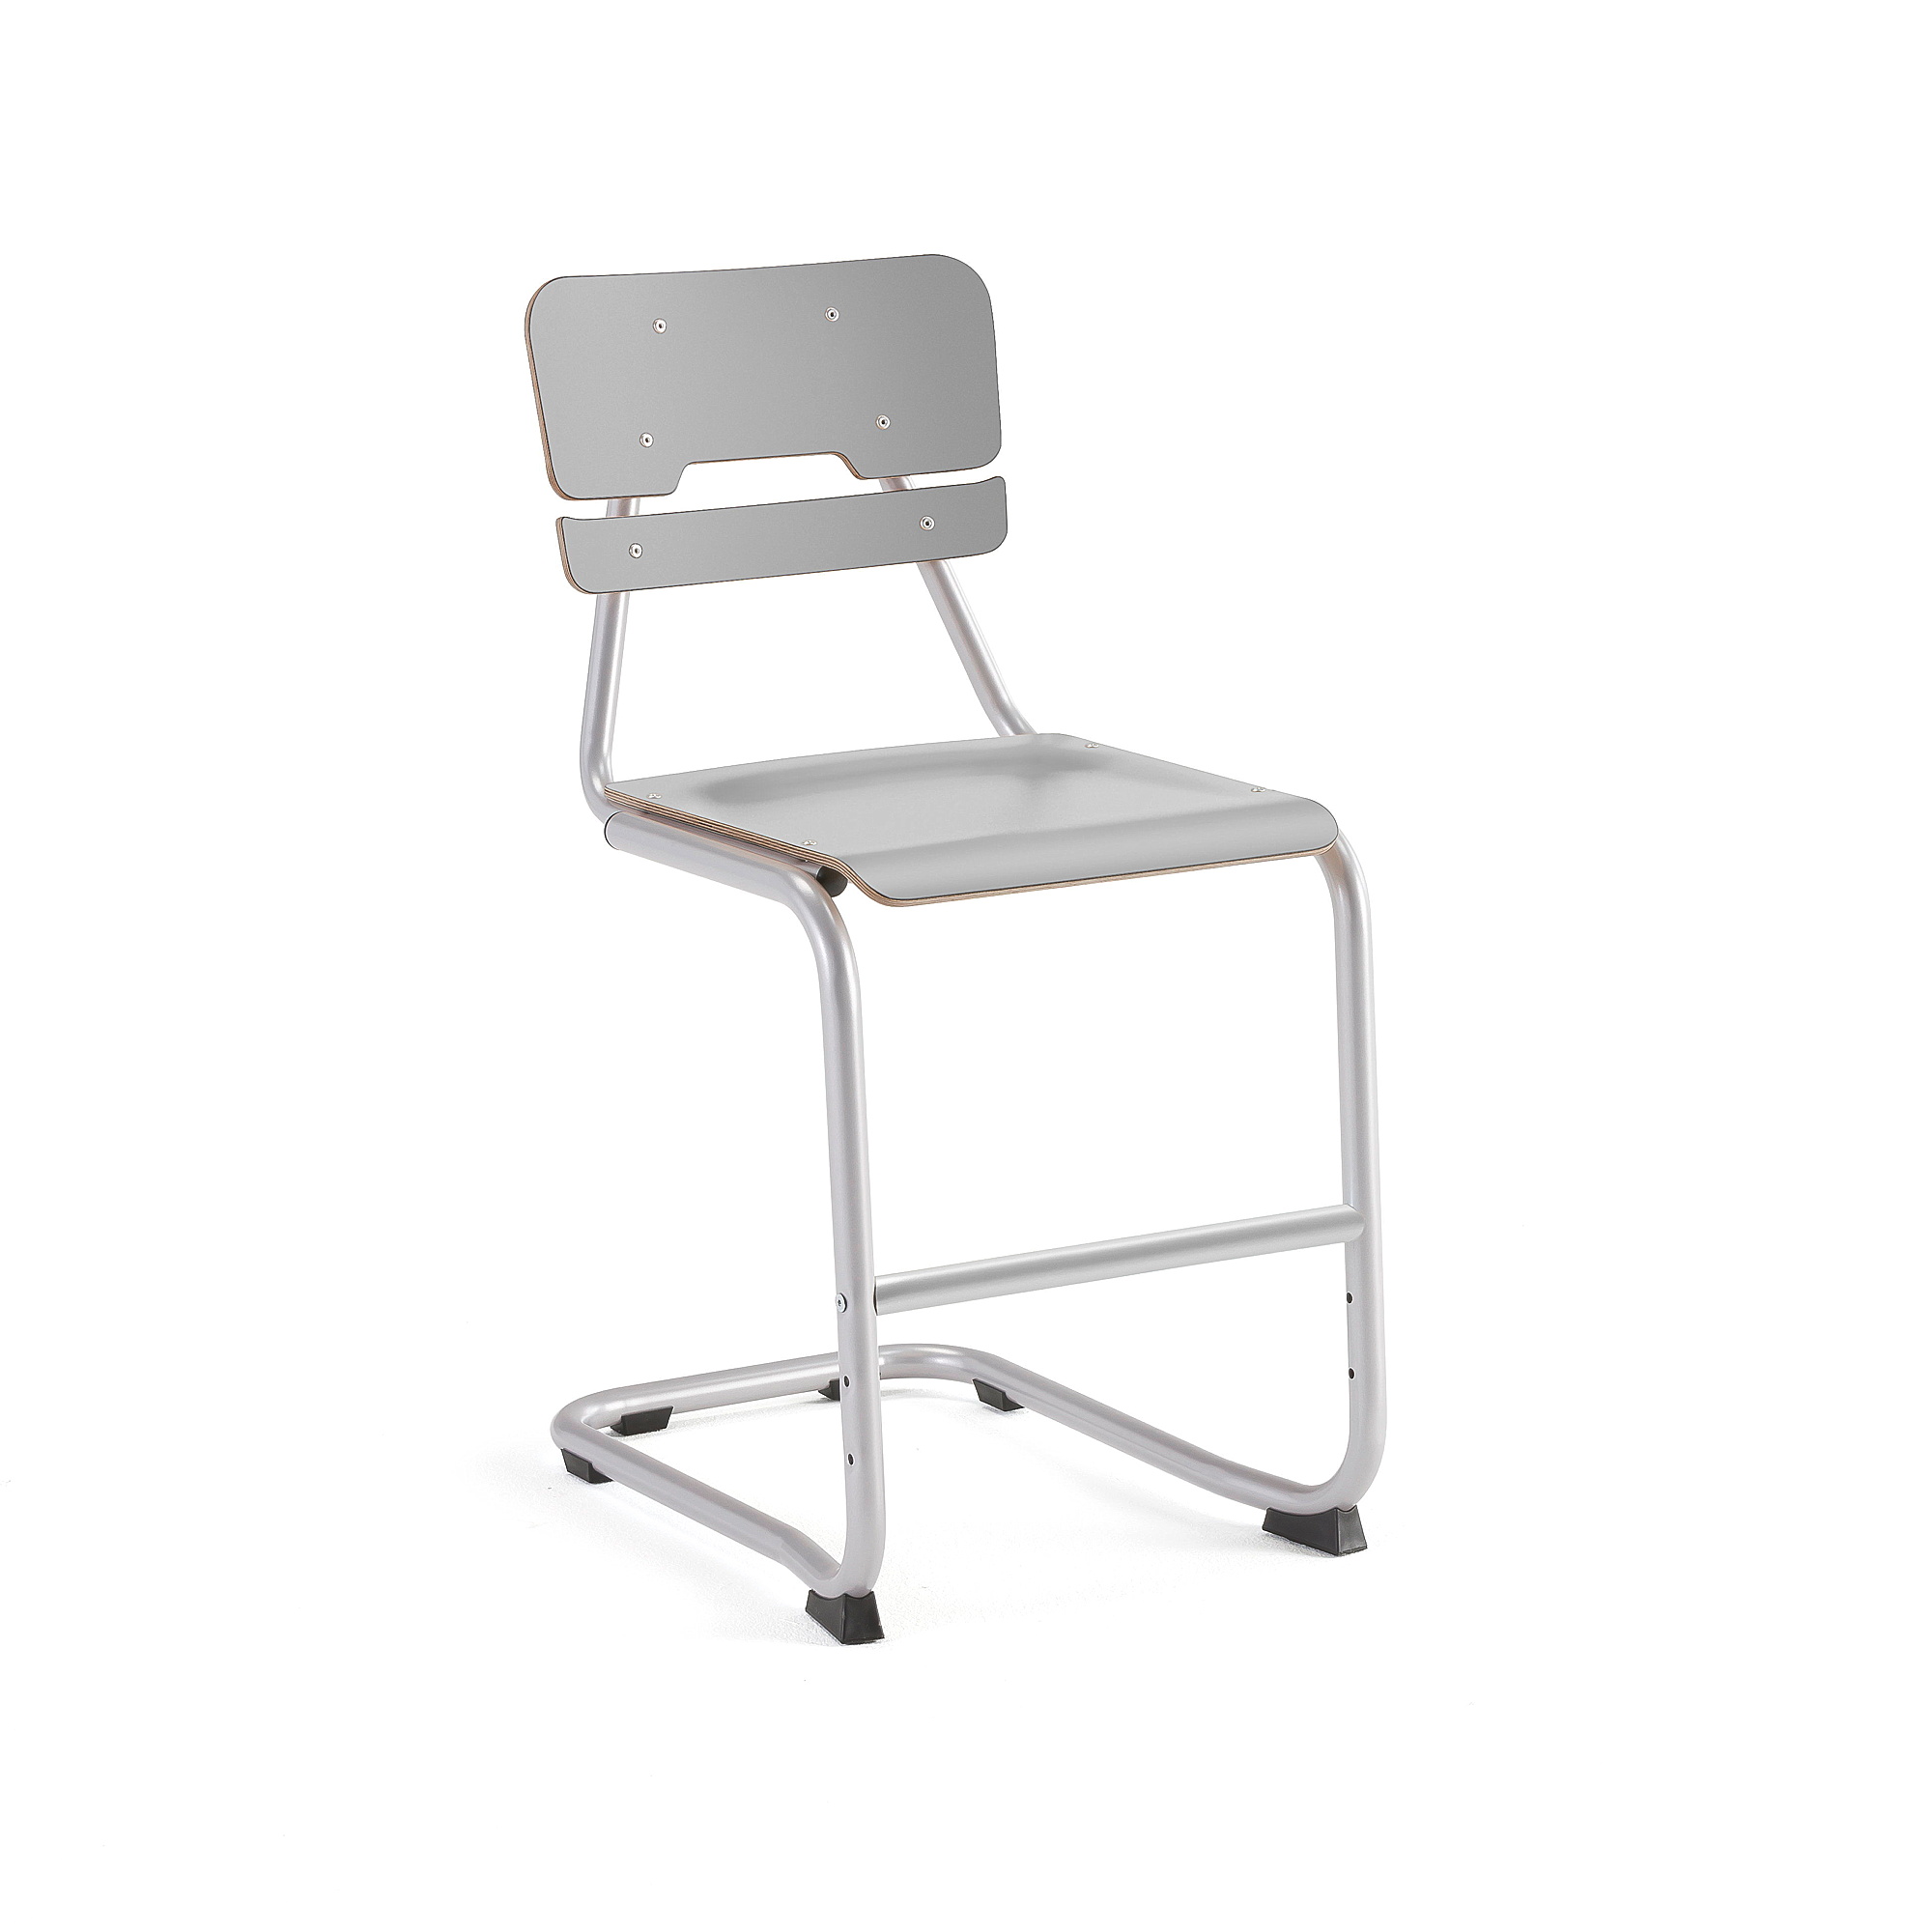 Školní židle LEGERE I, výška 500 mm, stříbrná, šedá